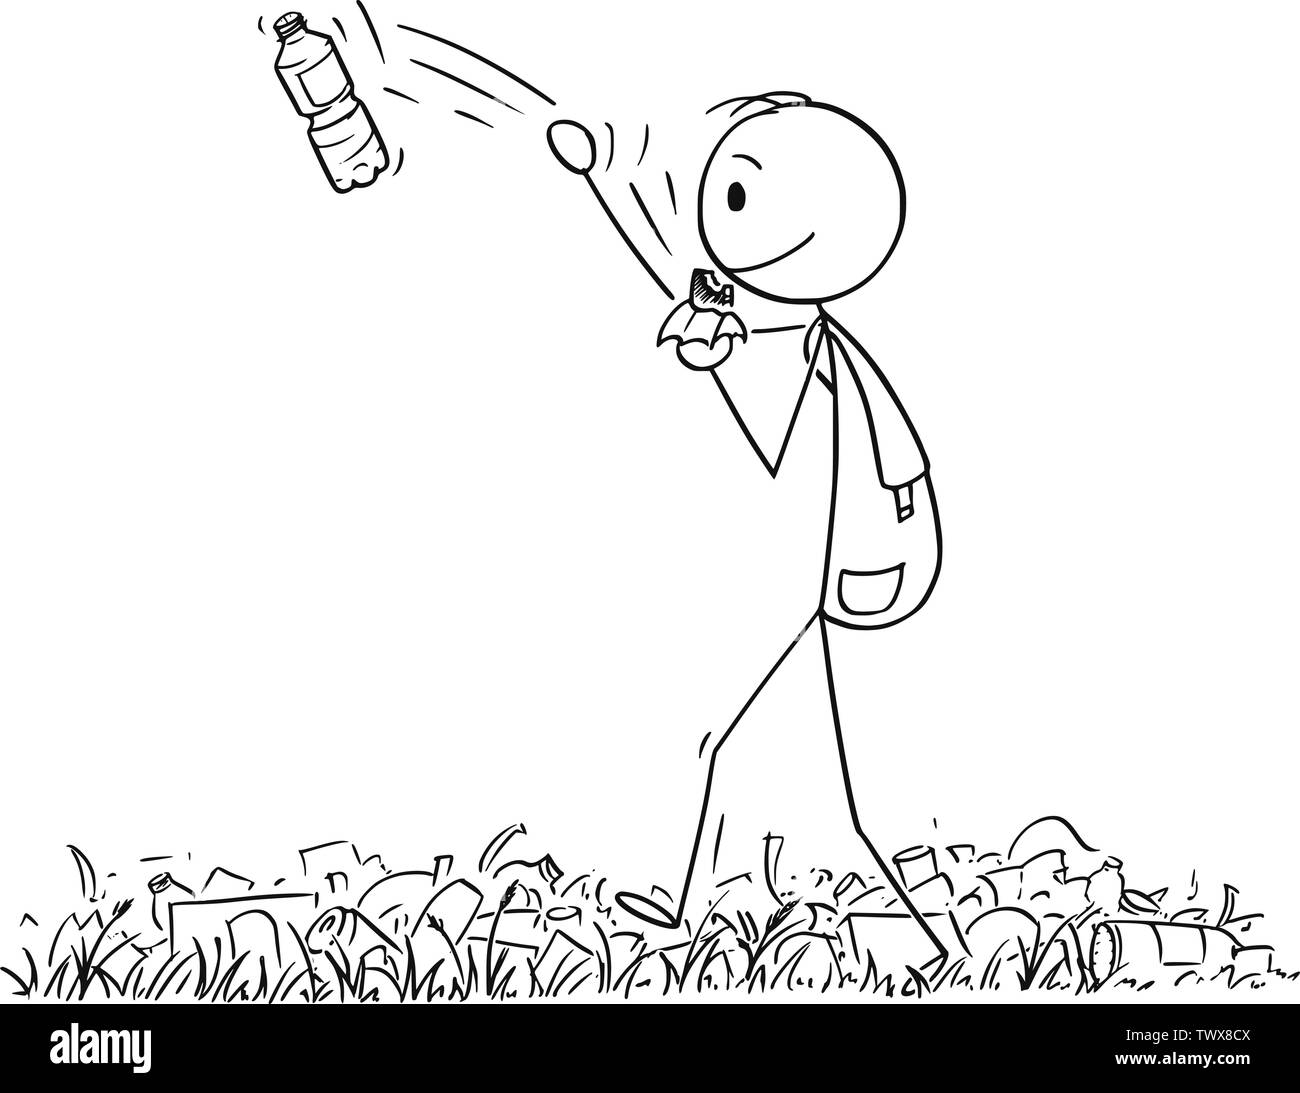 Vector cartoon stick figure dessin illustration conceptuelle de randonneur ou homme avec sac à dos de randonnée ou balade en pleine nature des déchets et détritus, et jetant loin de bouteilles en plastique. Illustration de Vecteur